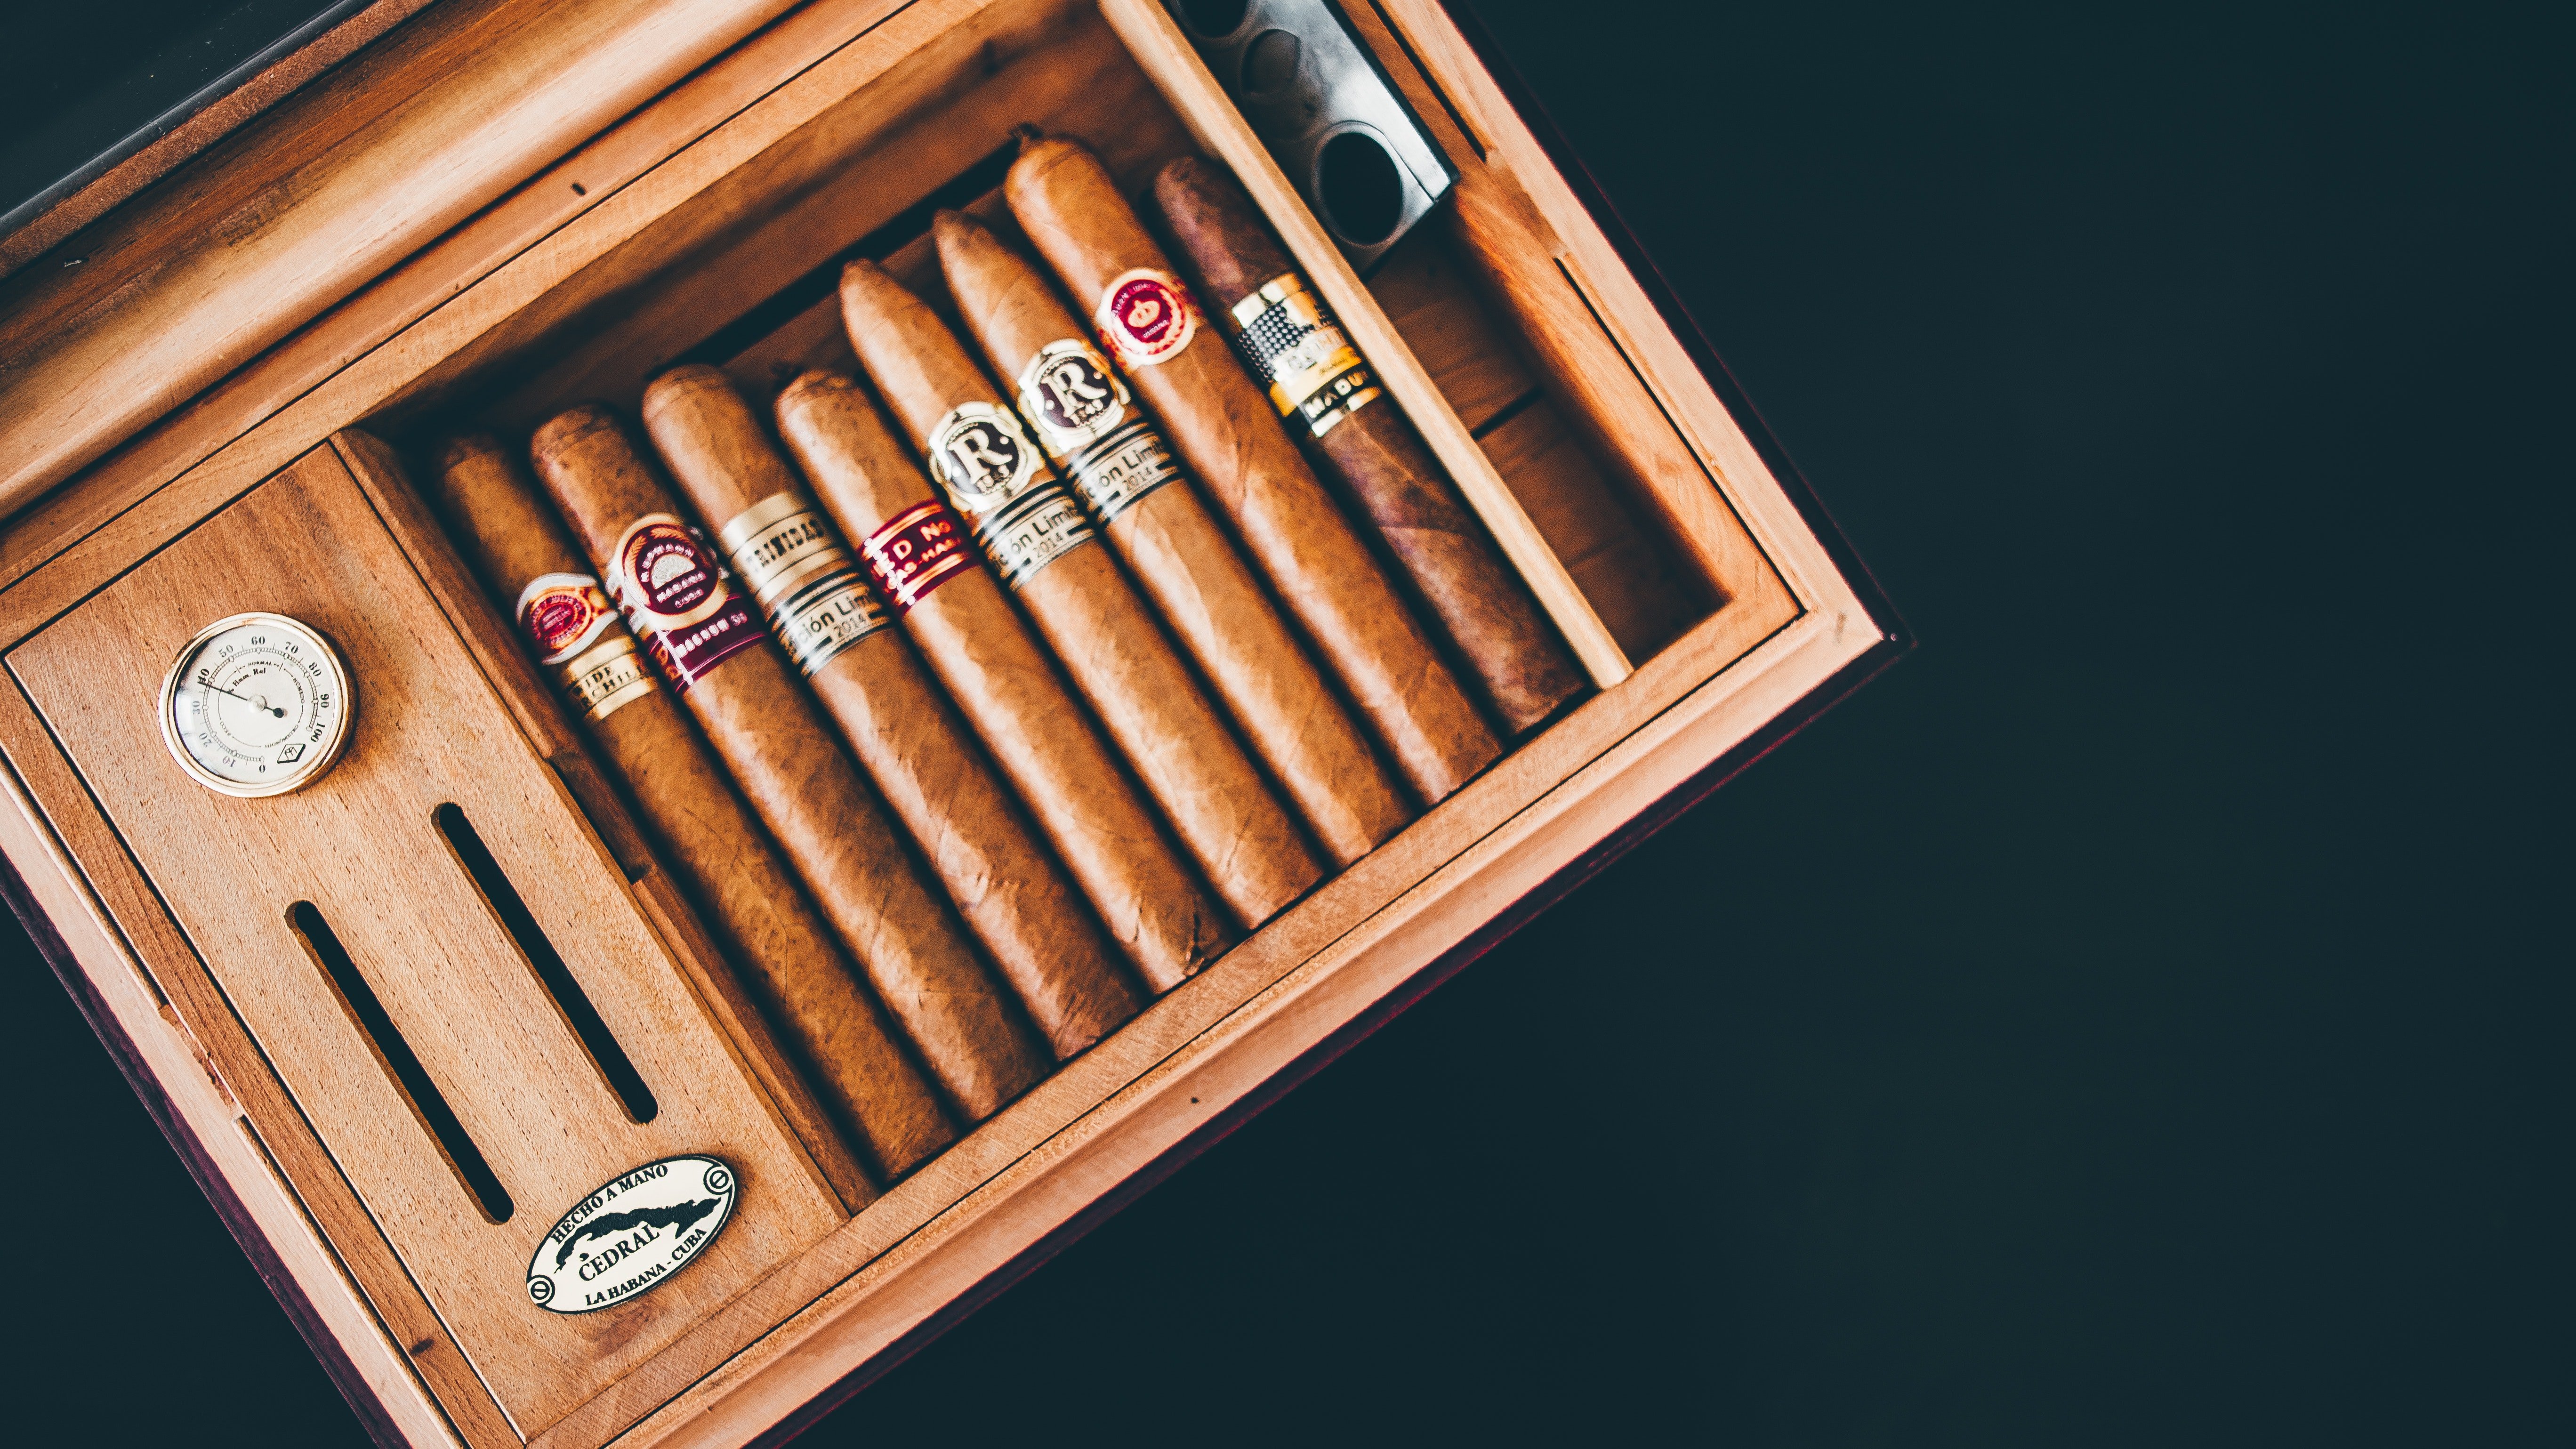 A box of cigars. | Source: Pexels